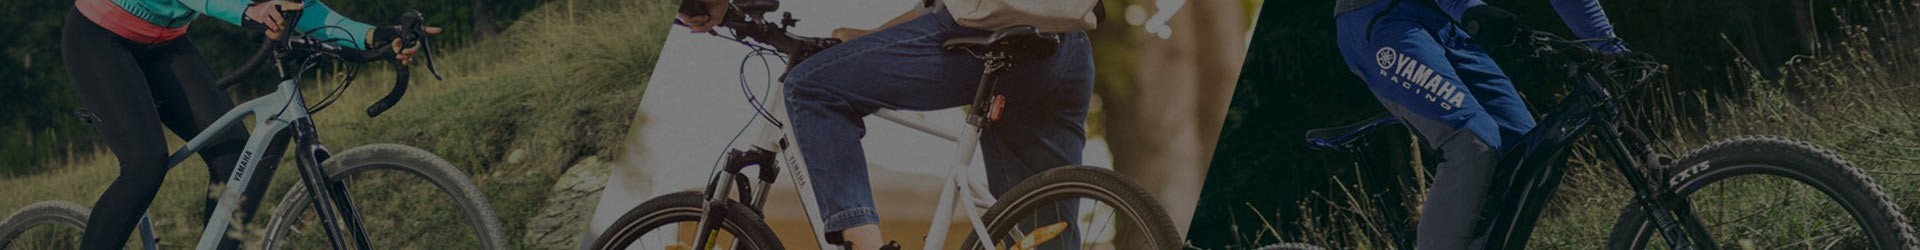 YAMAHA | Accessoires conducteur vélo VTT | Gamme officielle constructeur